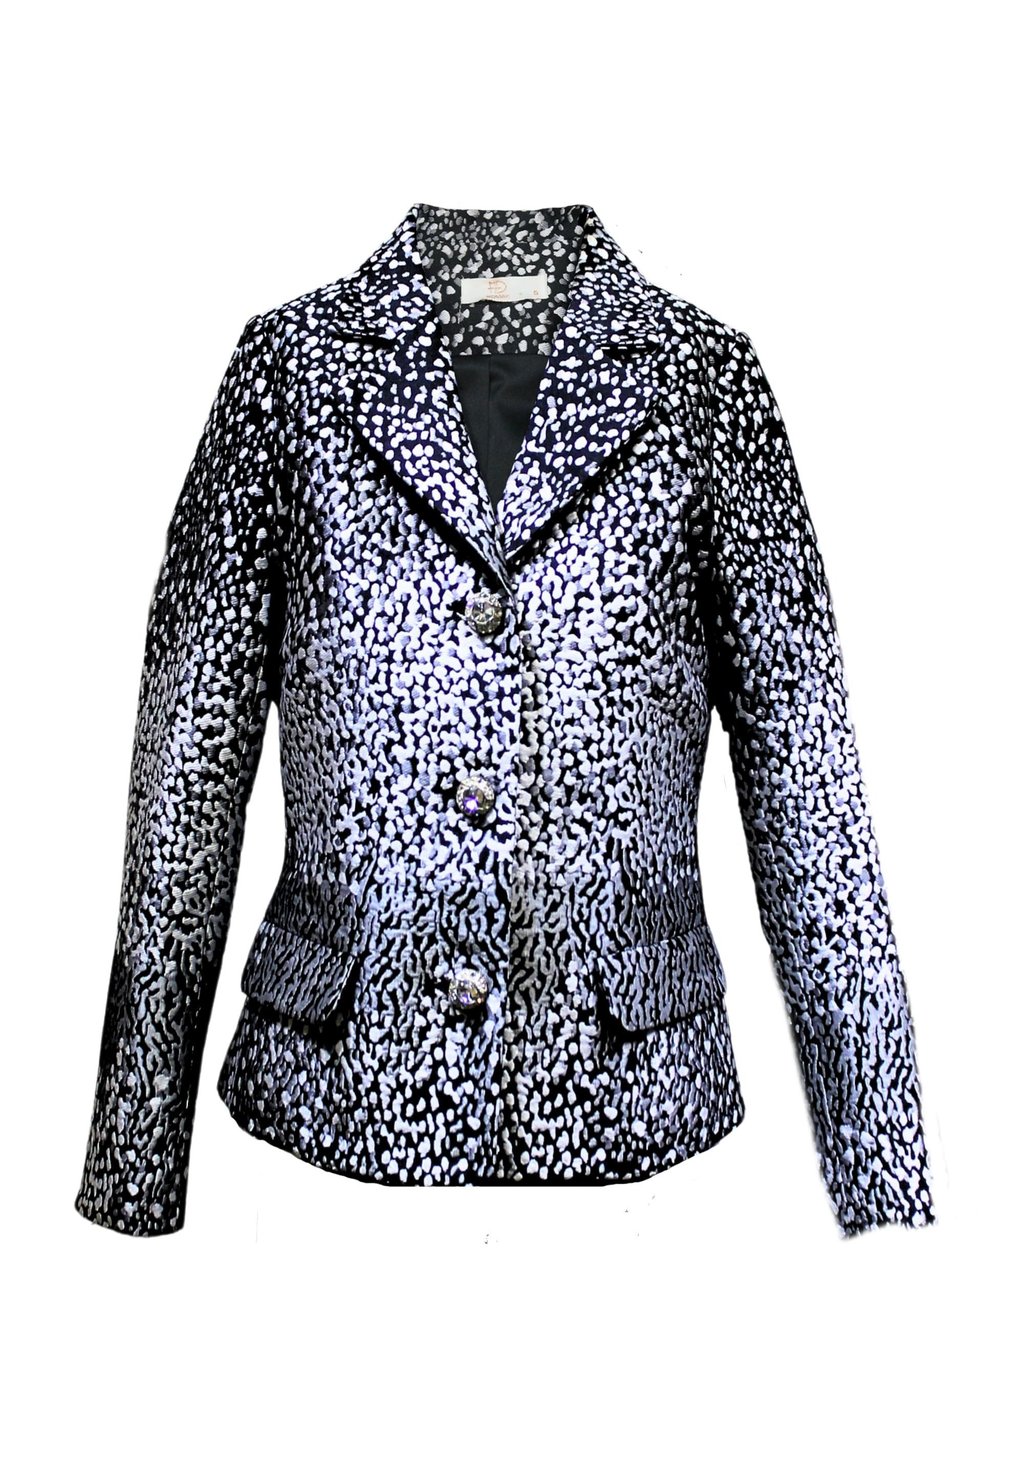 camiseta estampada lábio love leopardo moda verão para mulheres estampada gráfica manga curta roupa feminina 2020 Пиджак AMERICANA ESTAMPADA SENSE, черный